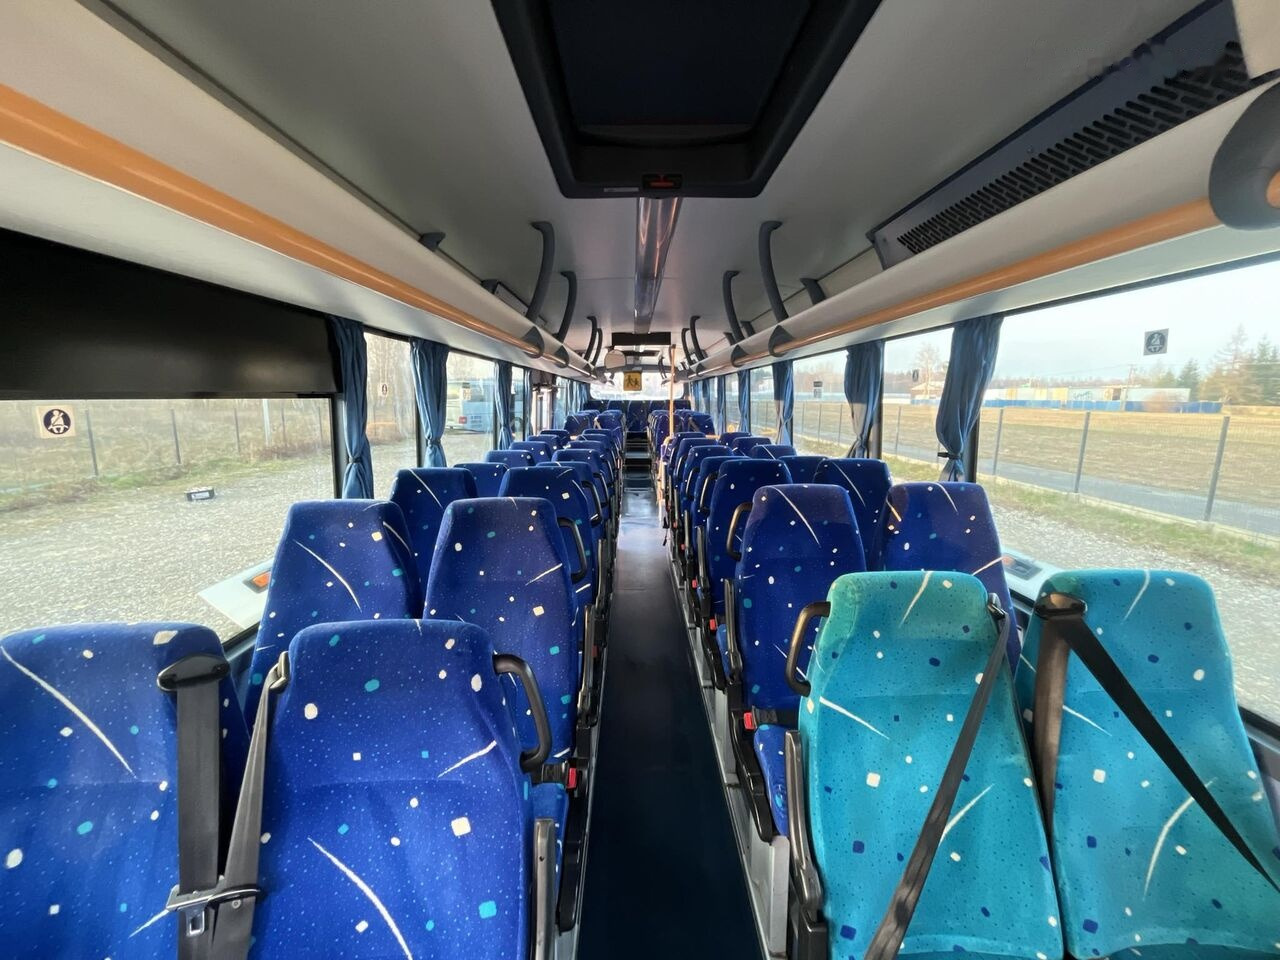 Turistinis autobusas Irisbus Crossway/Klimatyzacja/Manual/60+29 miejsc/Euro 5: foto 18